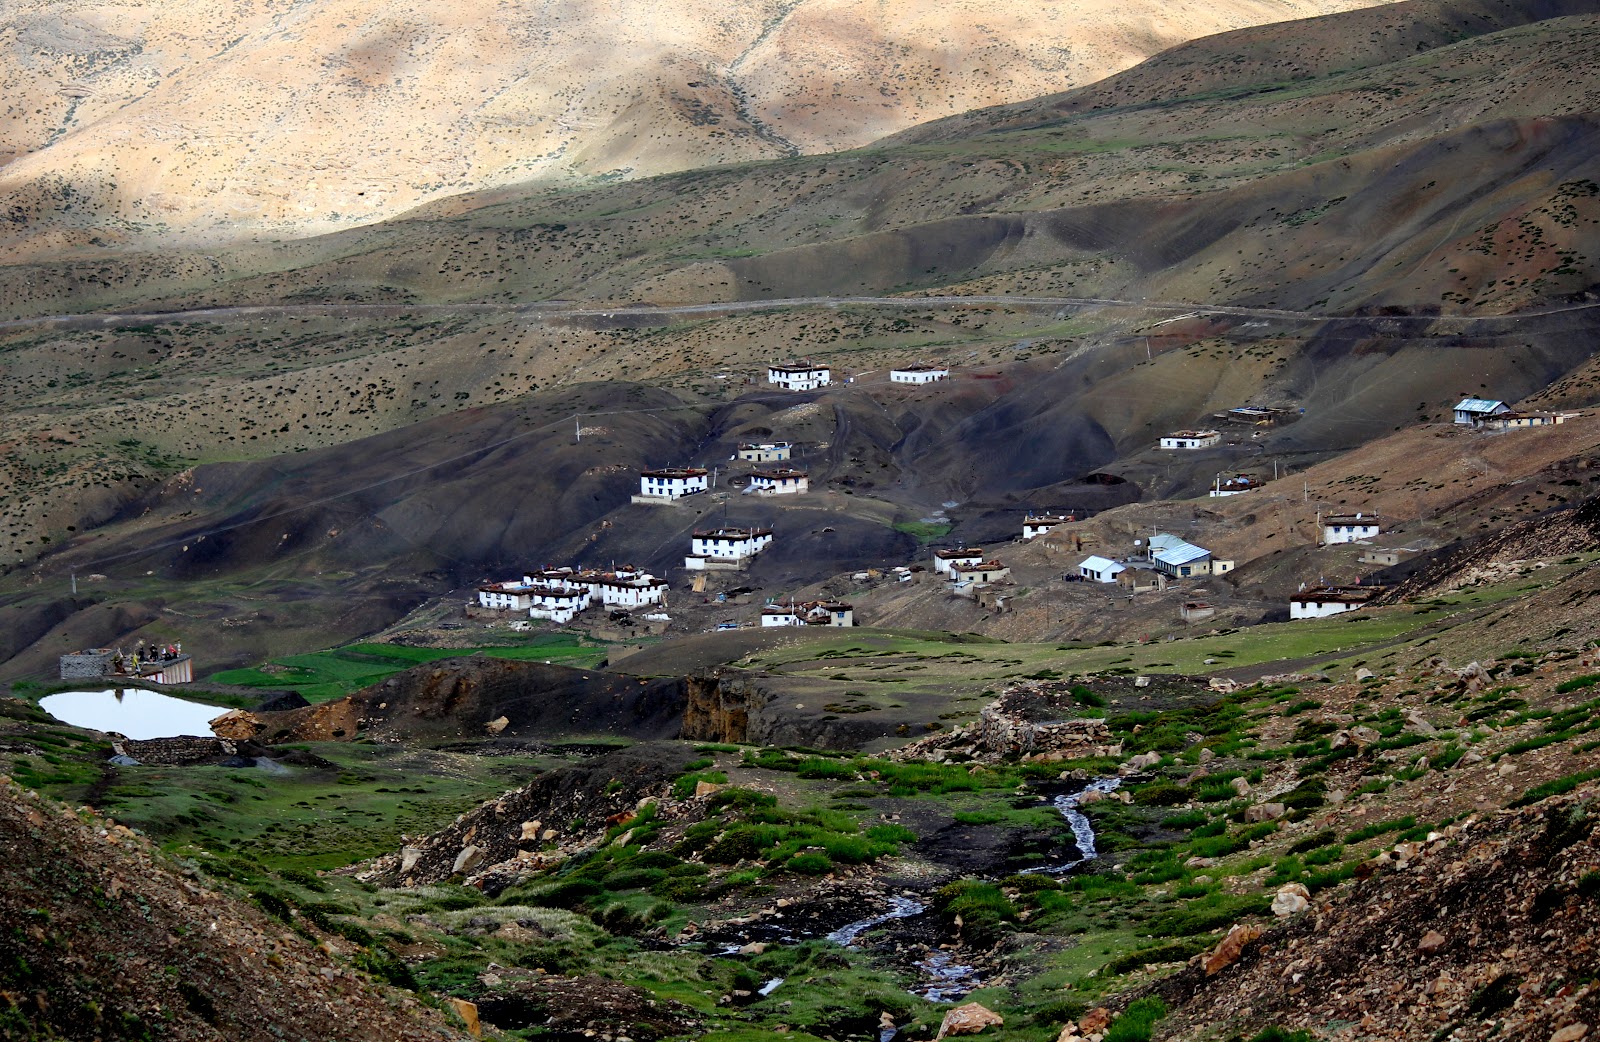 Quaint villages